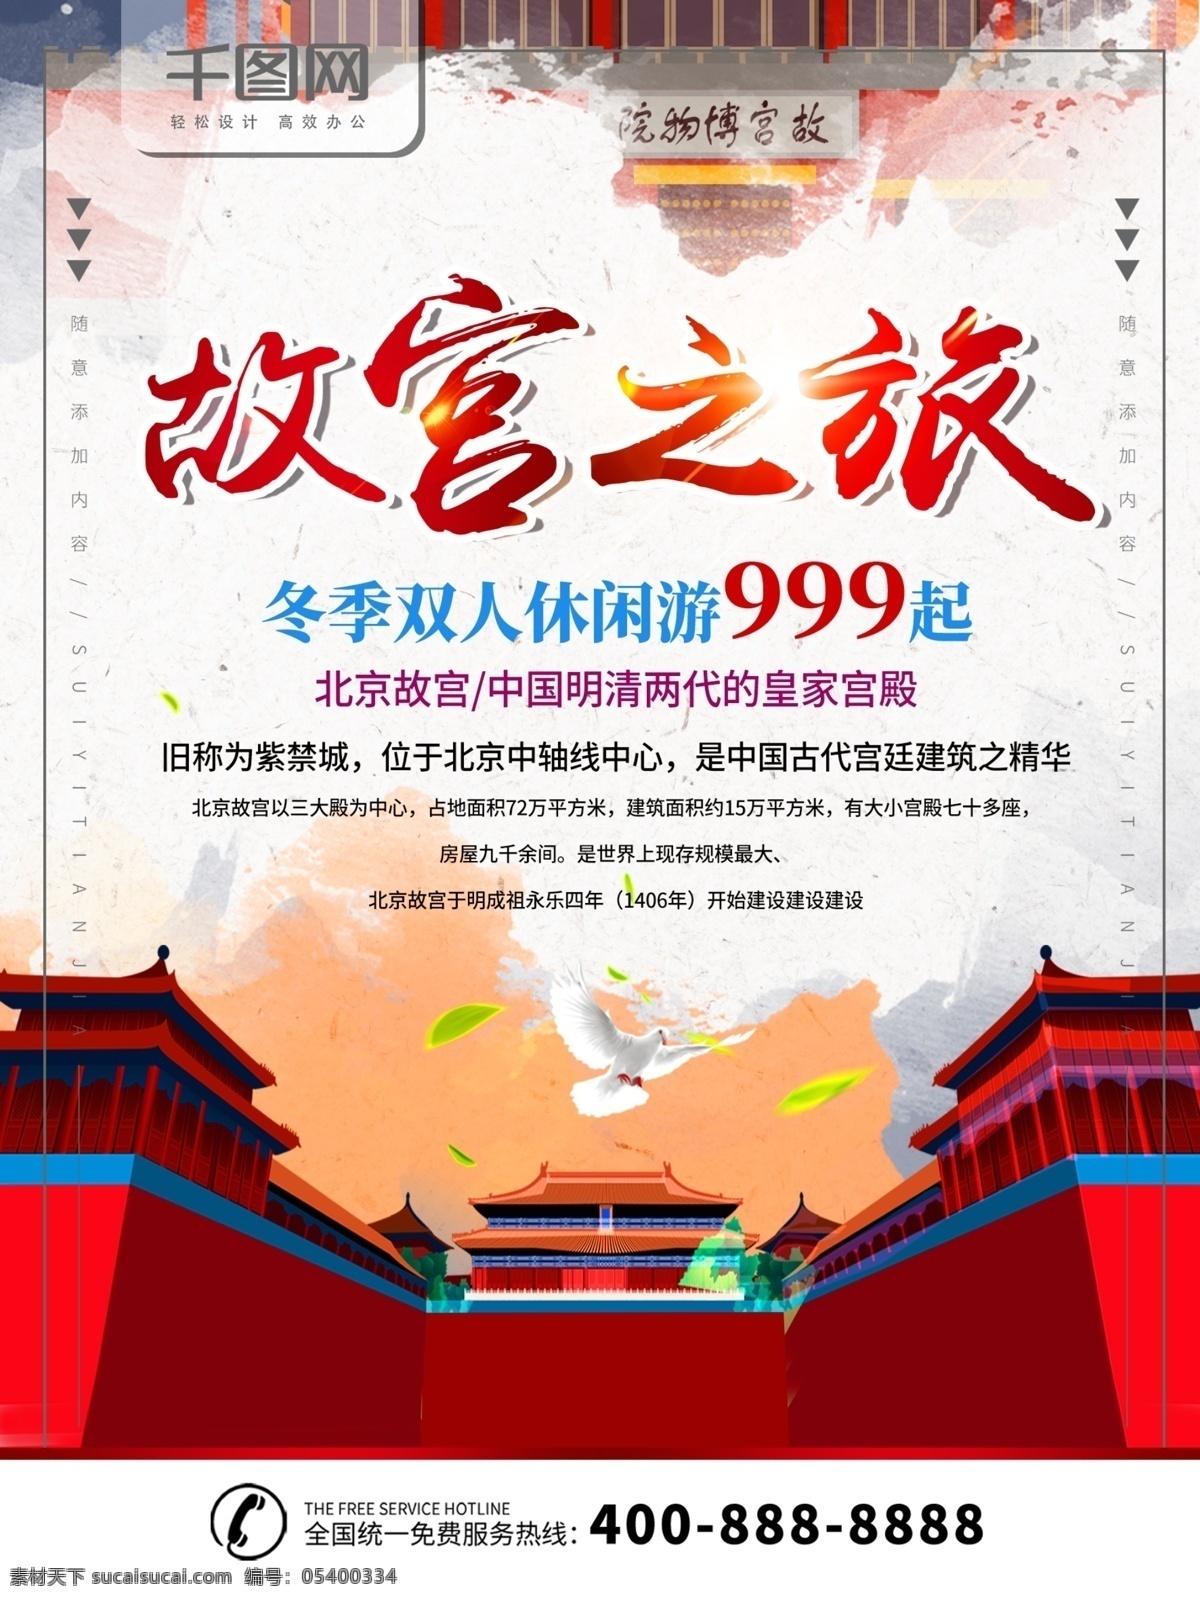 简约 素色 故宫 之旅 旅游 宣传海报 宣传 海报 故宫之旅 故宫旅游 北京旅游